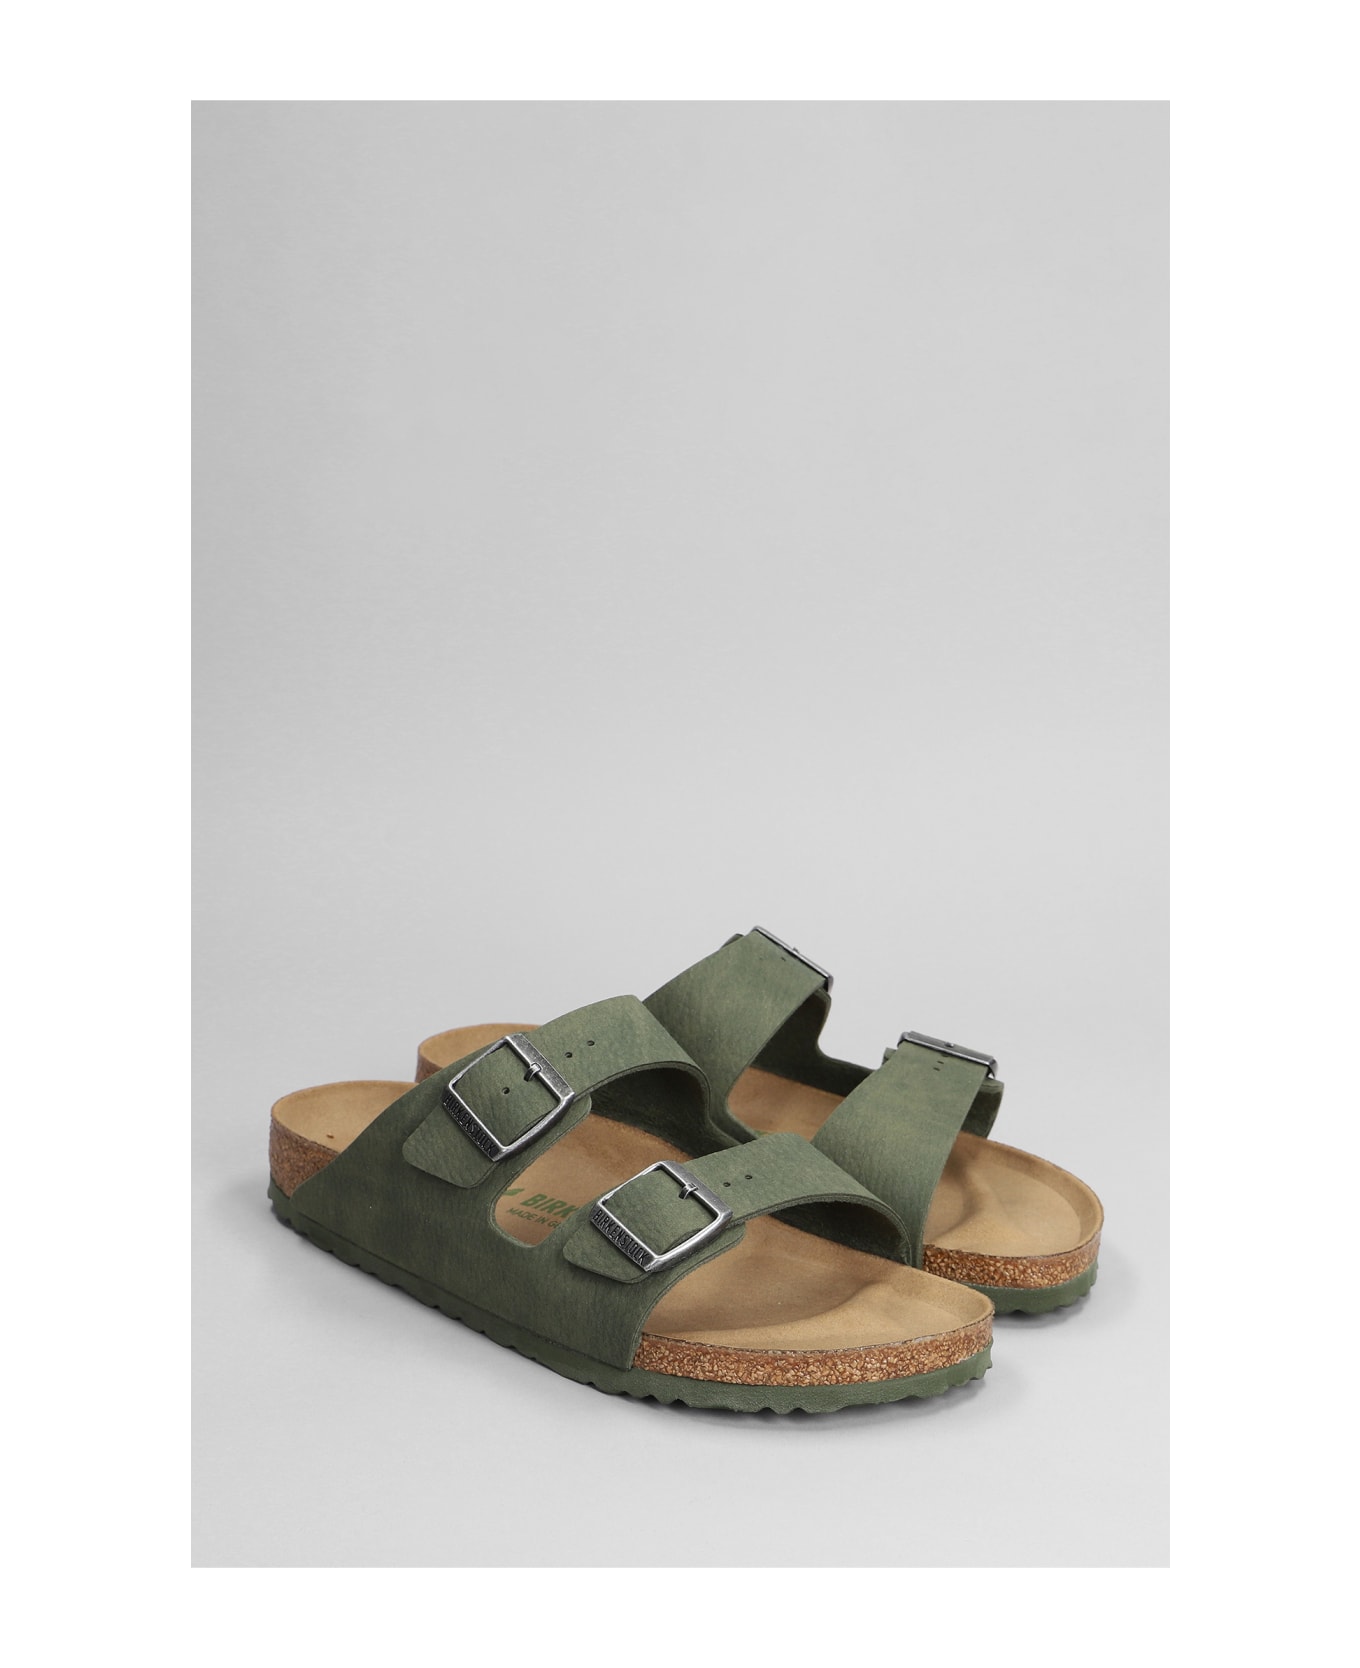 Birkenstock Arizona Sandals - Green その他各種シューズ